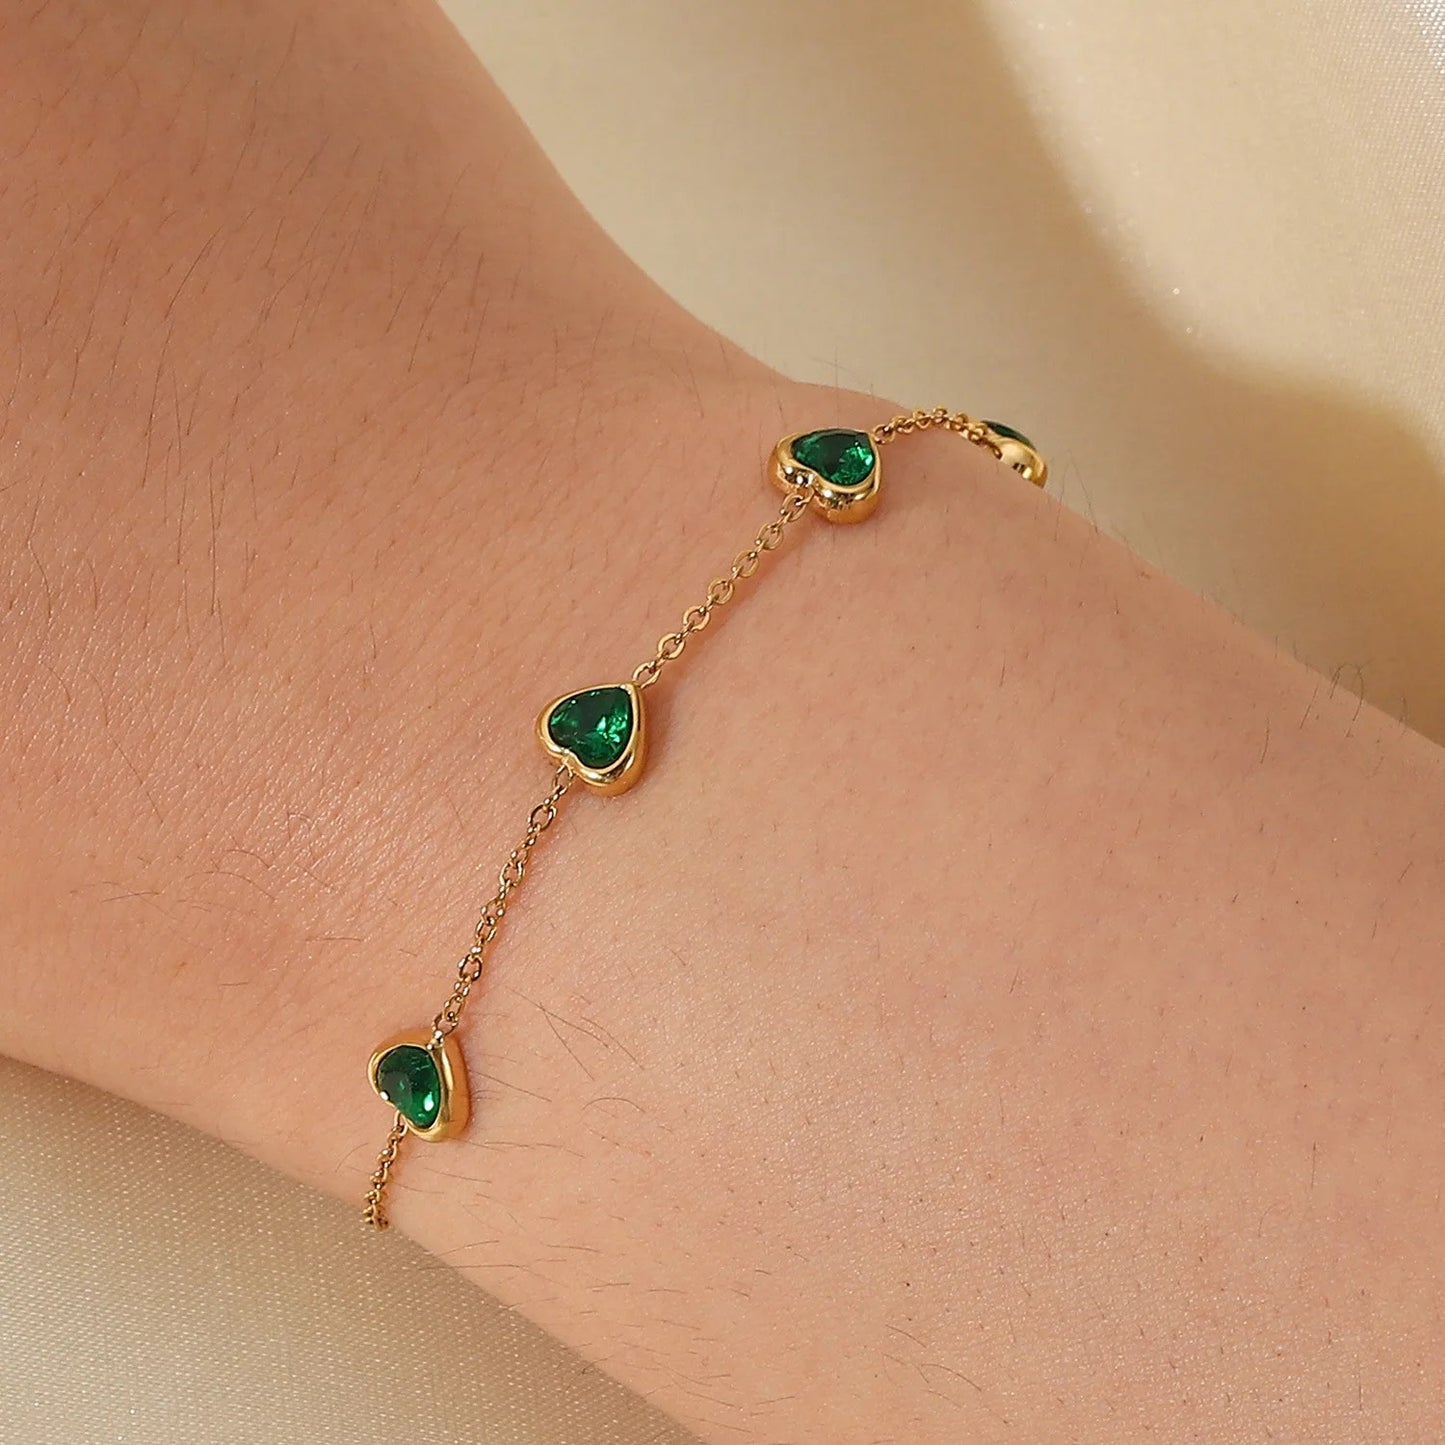 Belarus bracelet